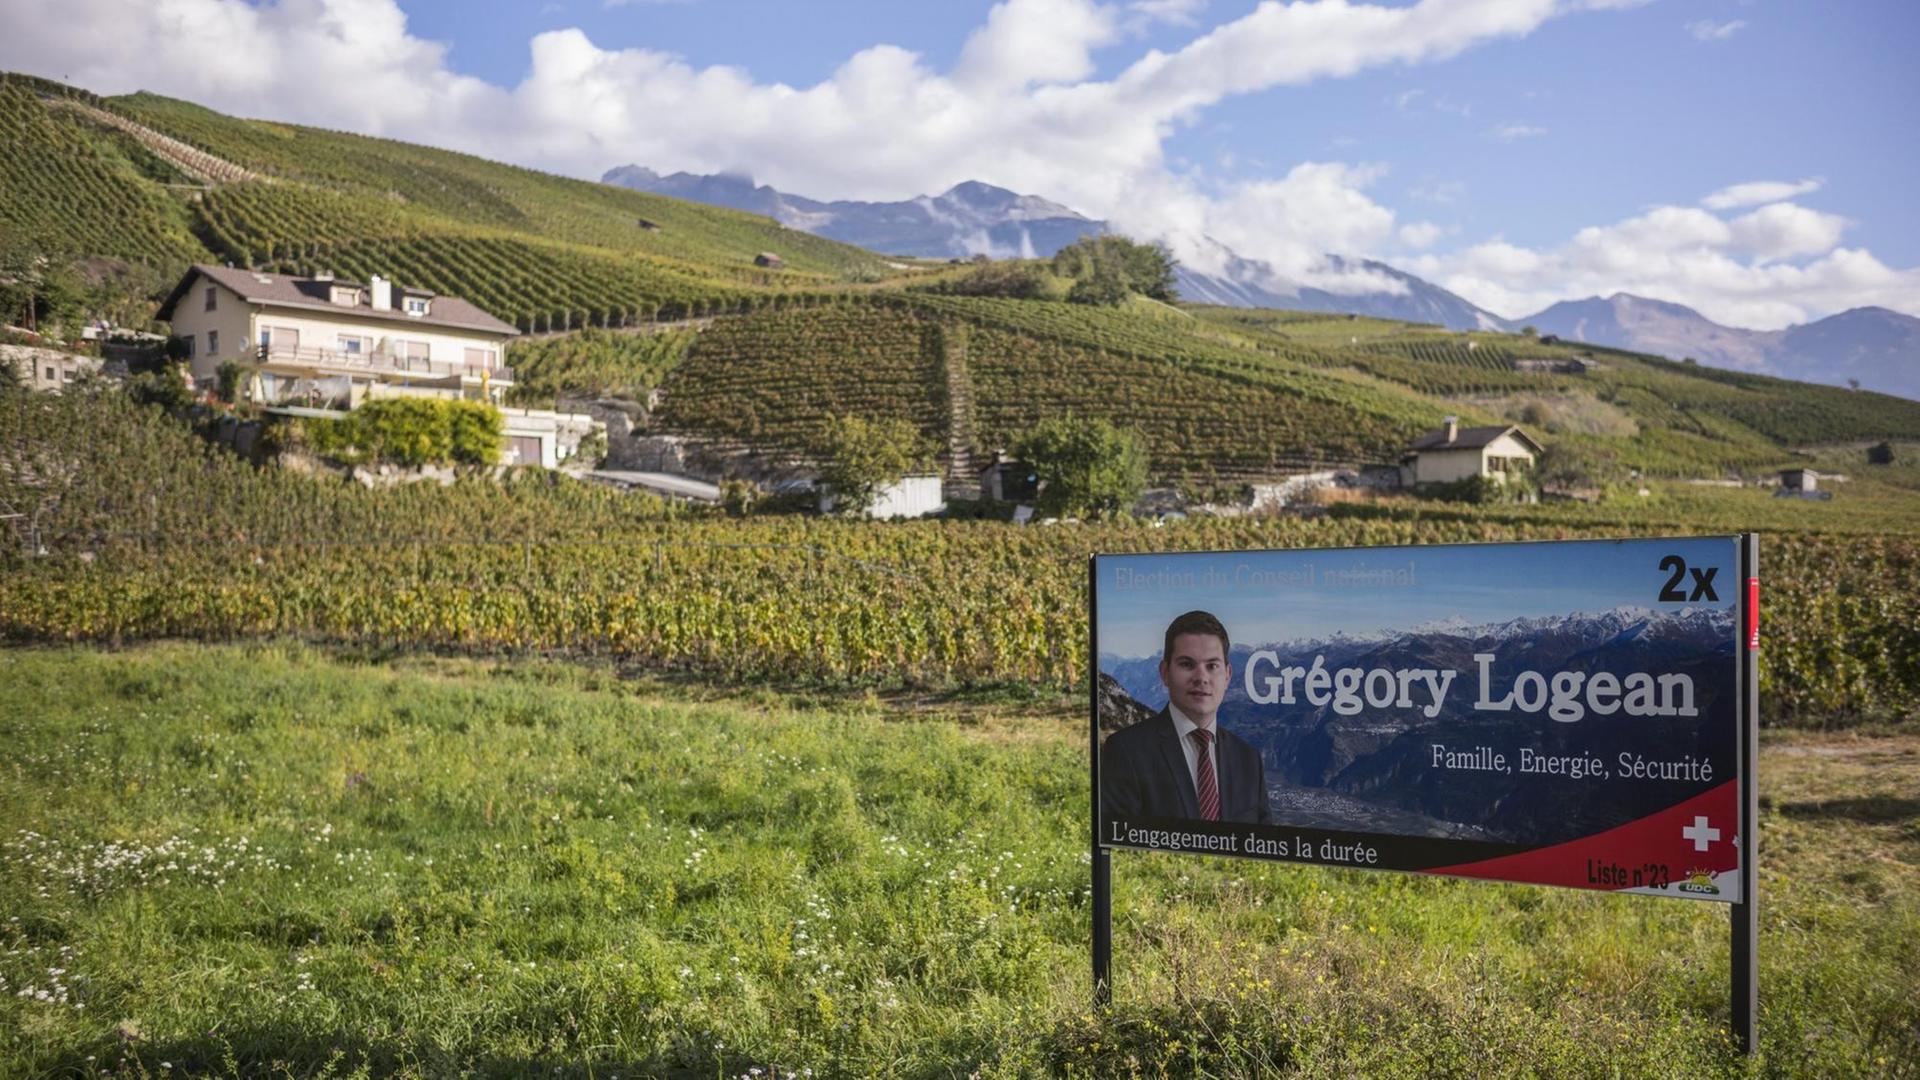 Wahlwerbung vor einem grünen Hügel in der Schweiz.